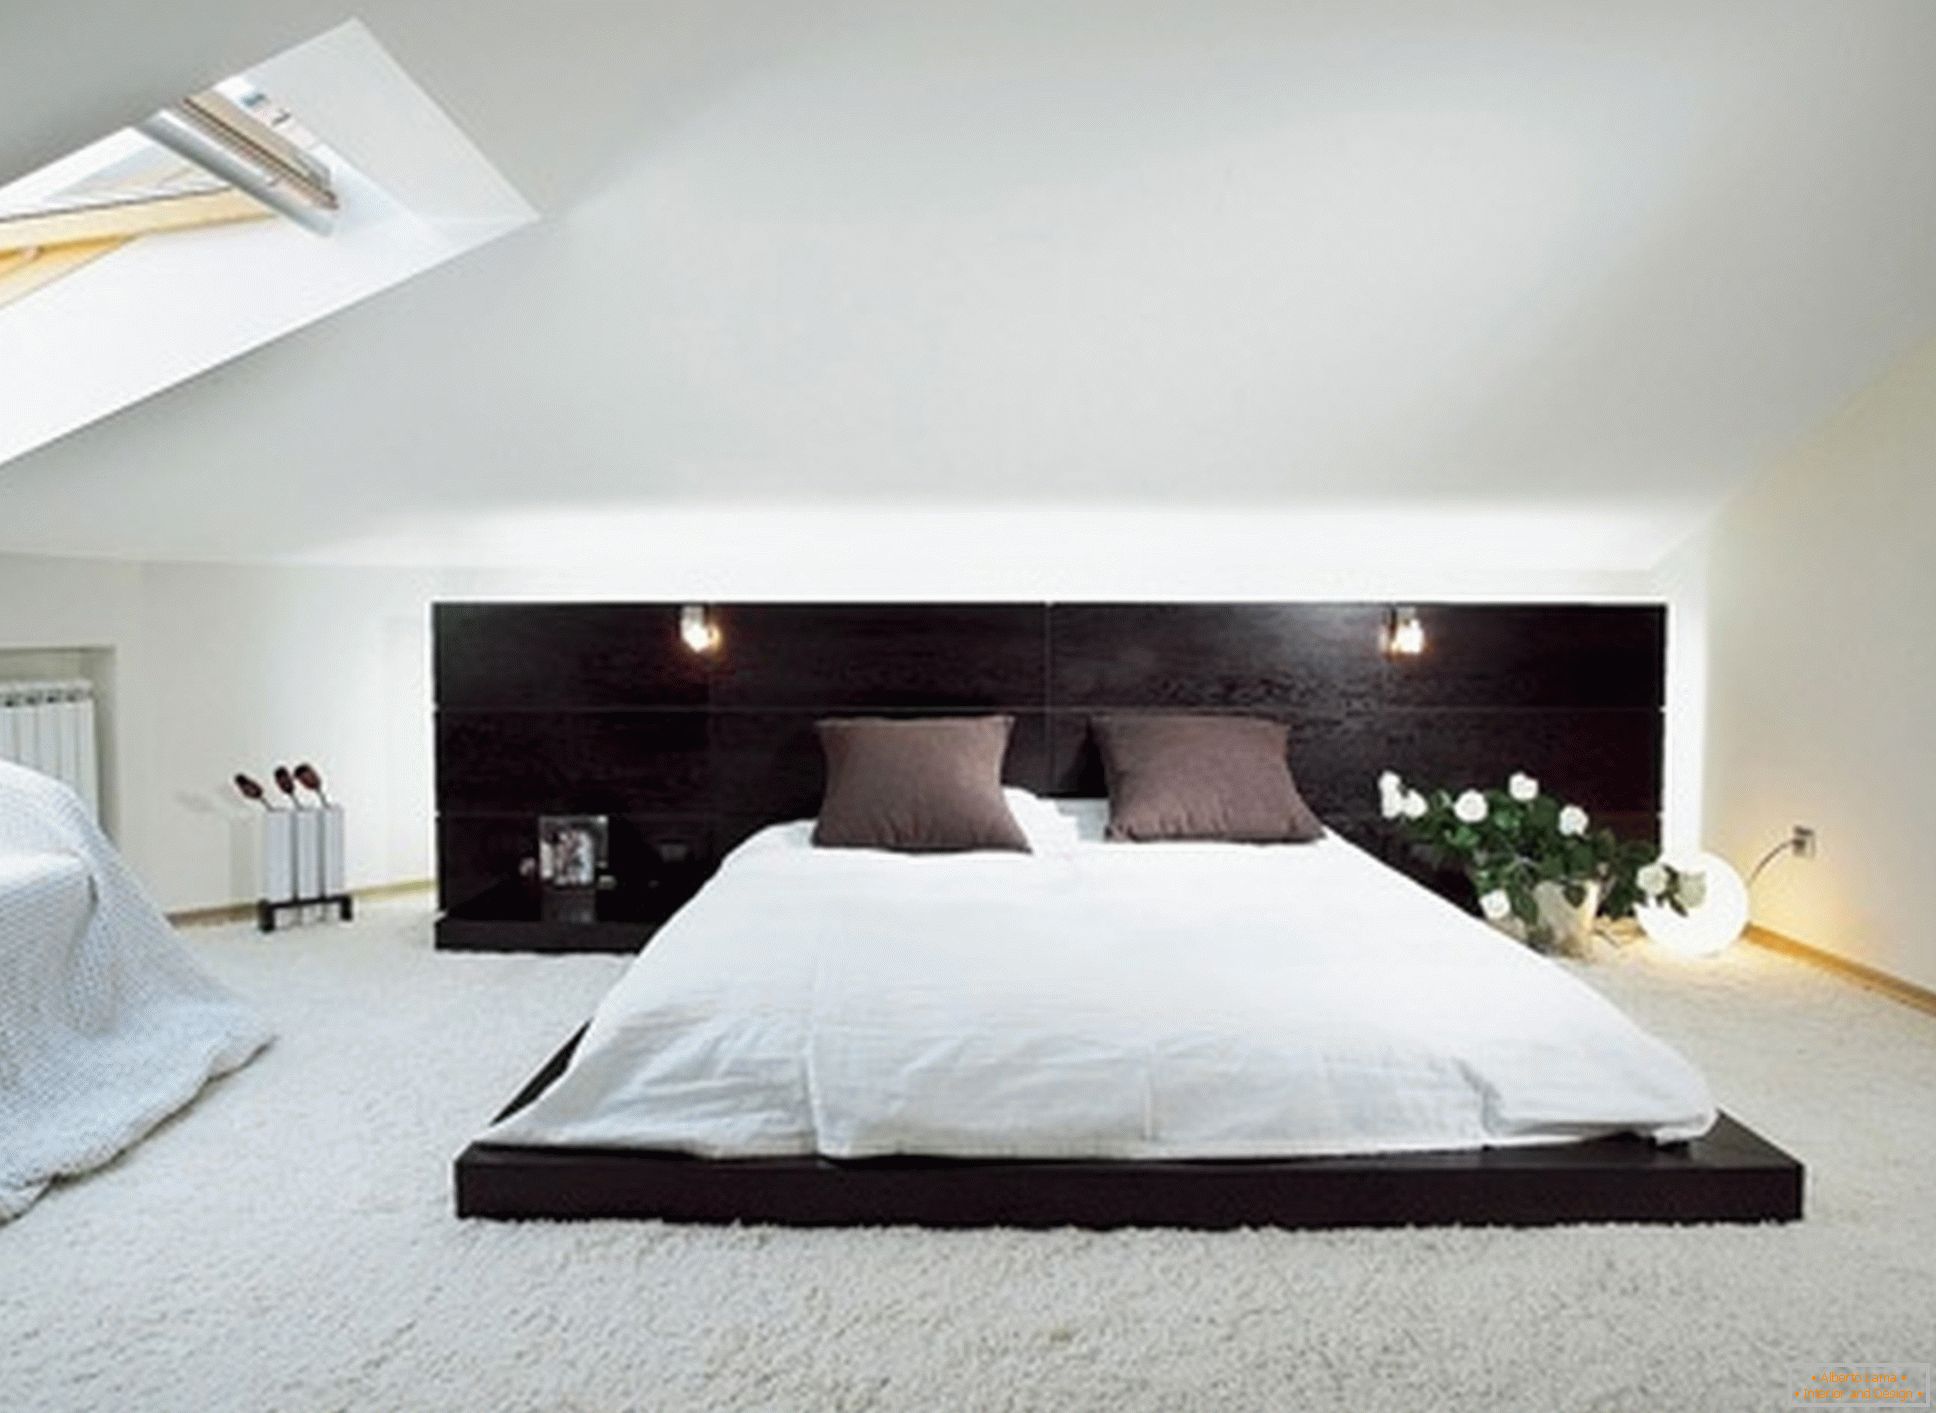 Luxusná spálňa v štýle minimalizmu - príklad úspešného dizajnu malej miestnosti v podkroví.